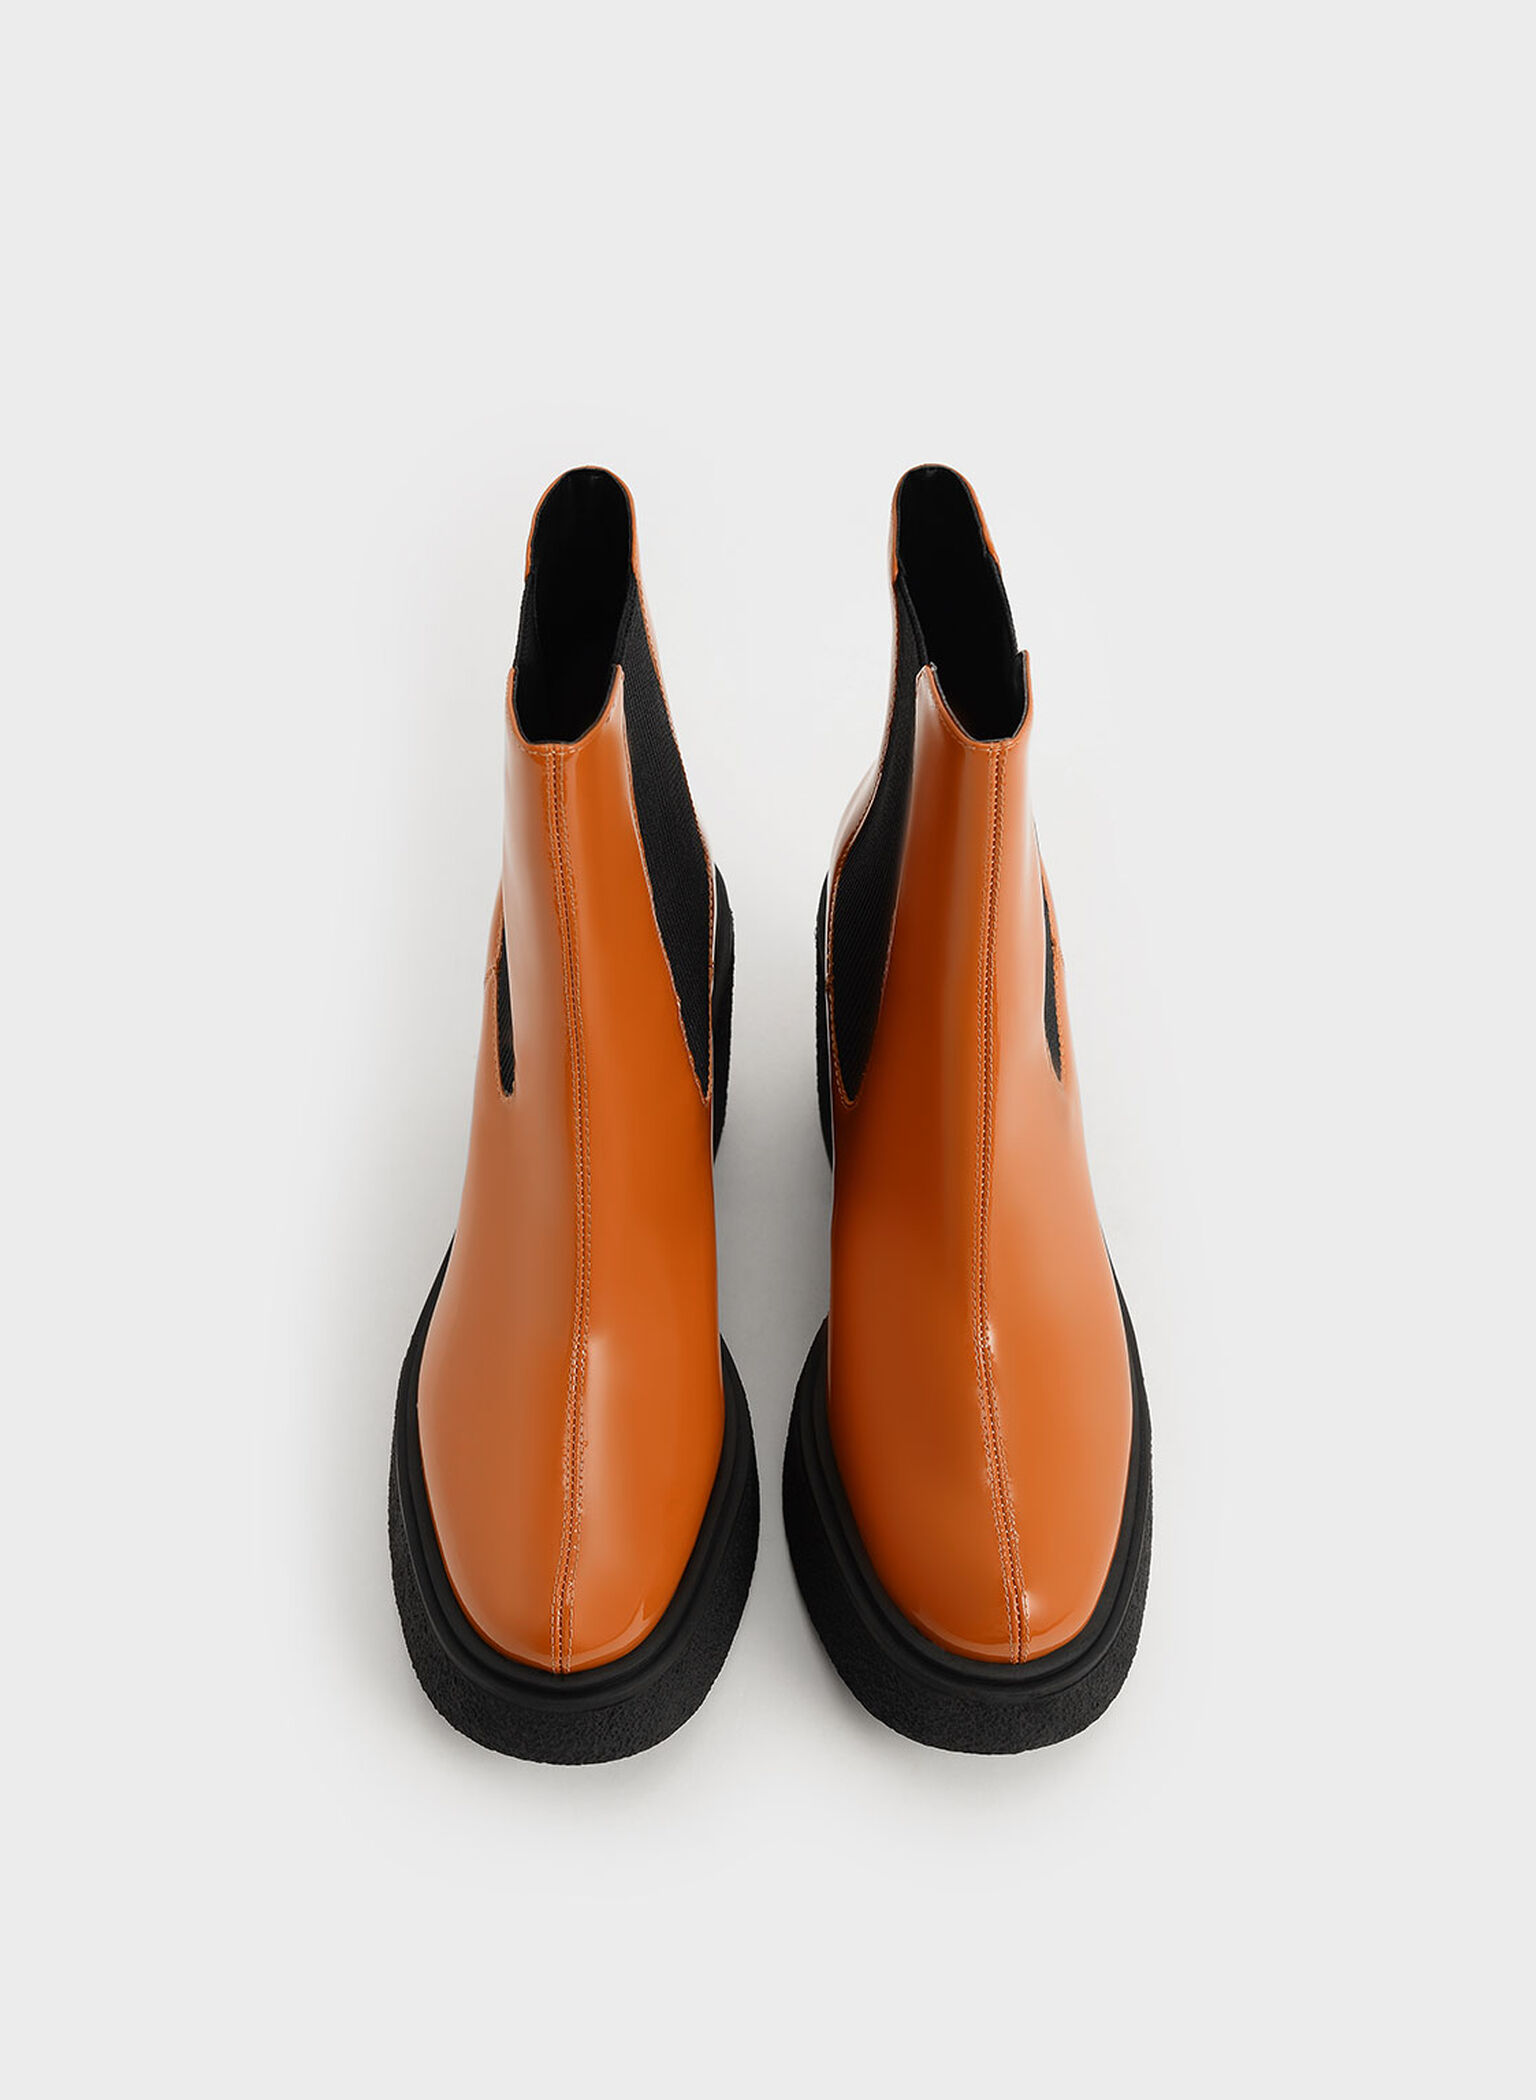 Odette Patent Leather Chelsea Platform Boots, Cognac, hi-res